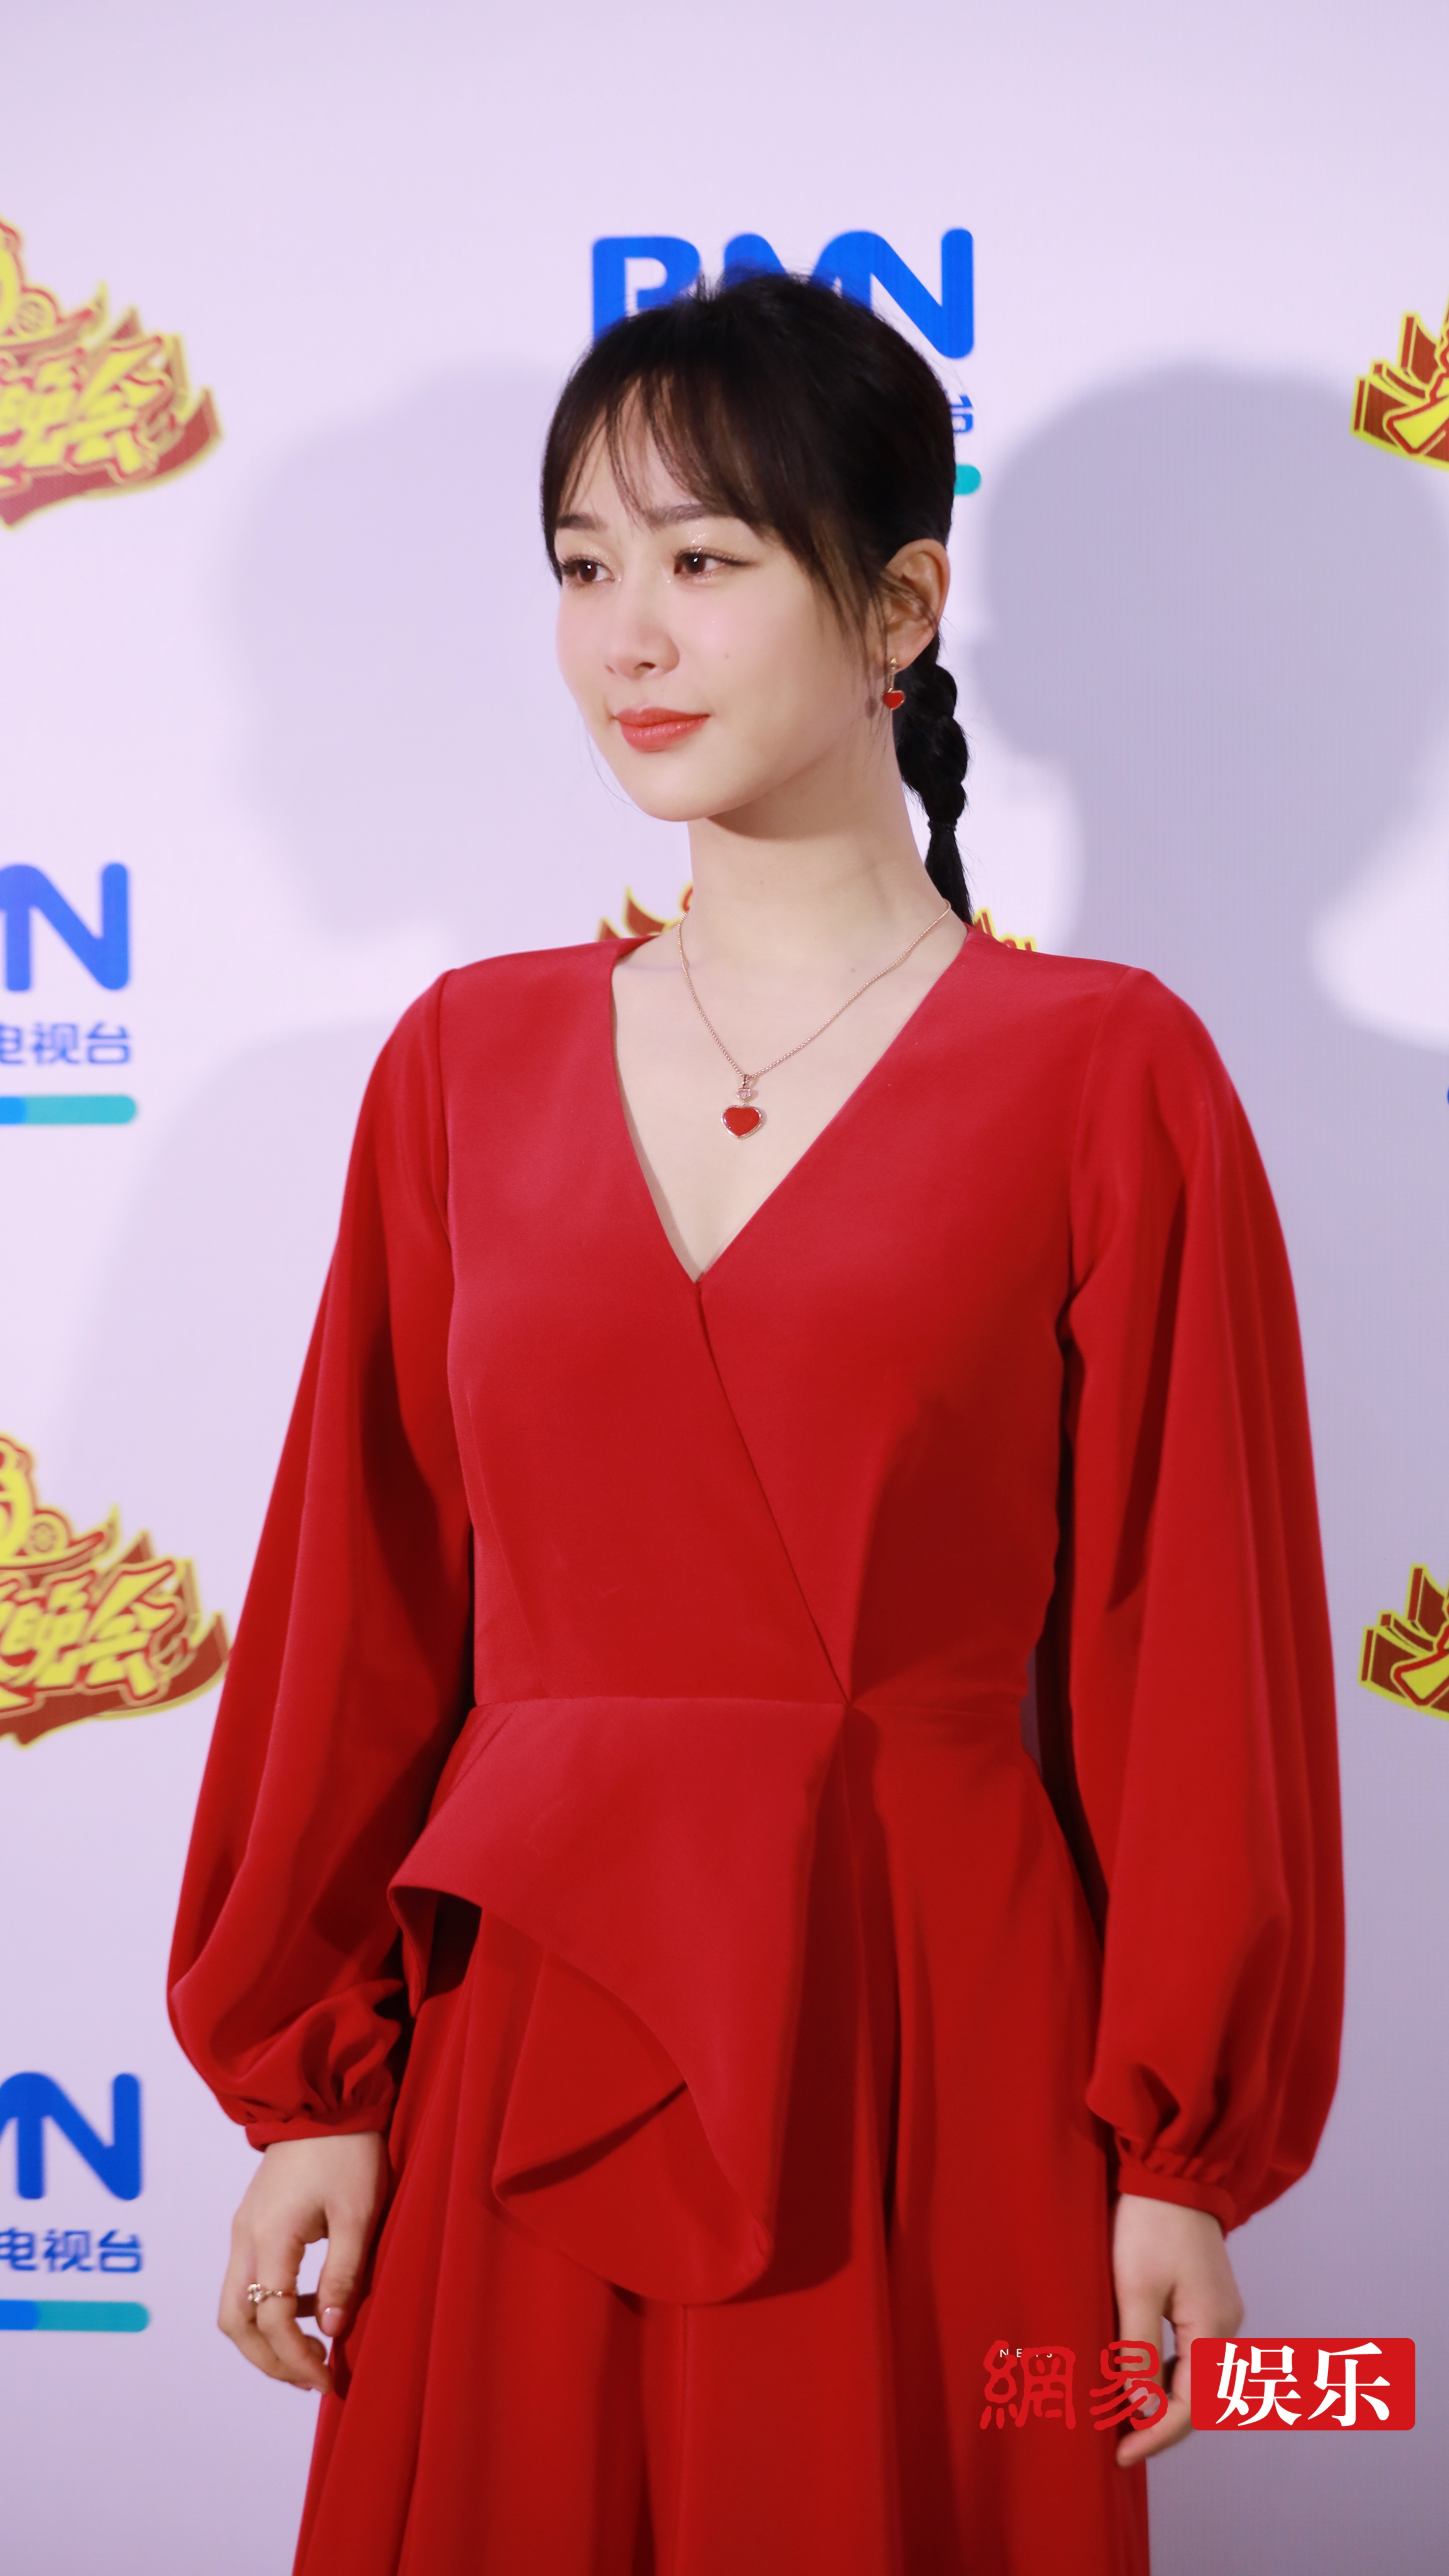 杨紫身穿红色连衣裙现身北京卫视春晚,面色红润,甜美可爱,小猴紫太可